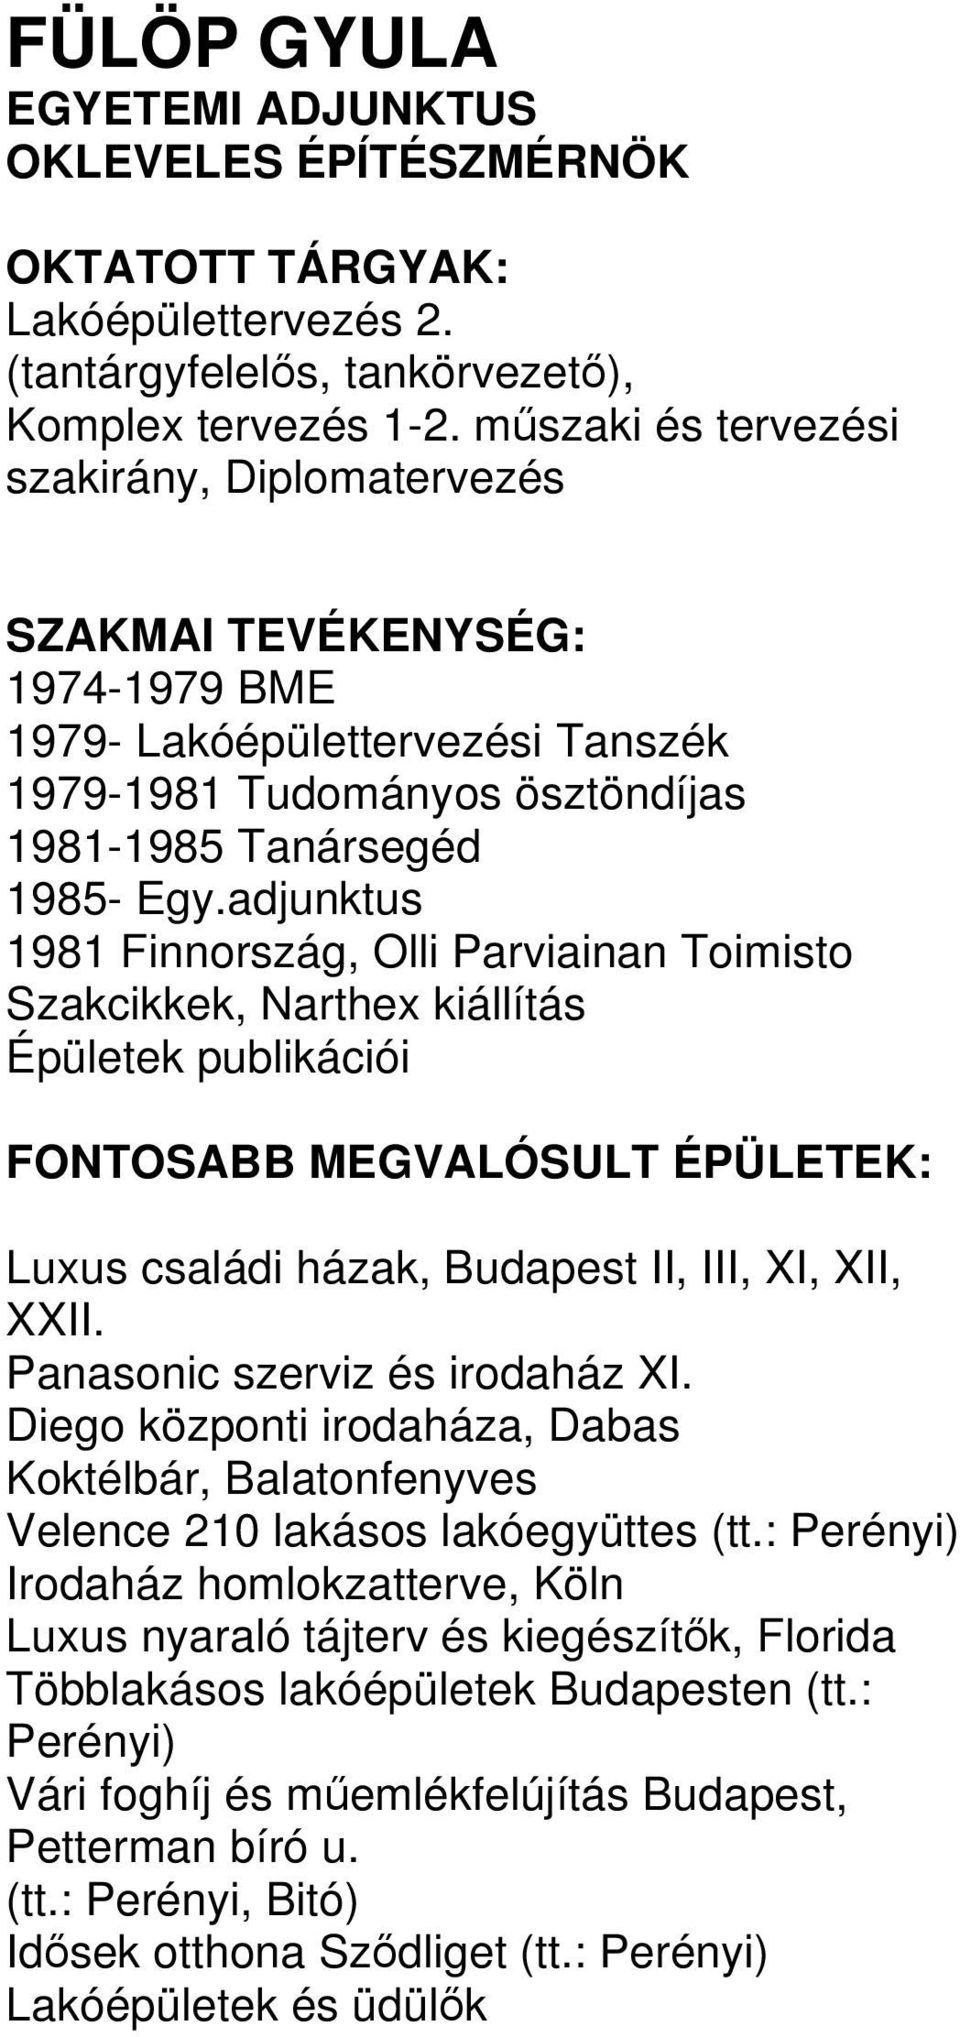 adjunktus 1981 Finnország, Olli Parviainan Toimisto Szakcikkek, Narthex kiállítás Épületek publikációi Luxus családi házak, Budapest II, III, XI, XII, XXII. Panasonic szerviz és irodaház XI.